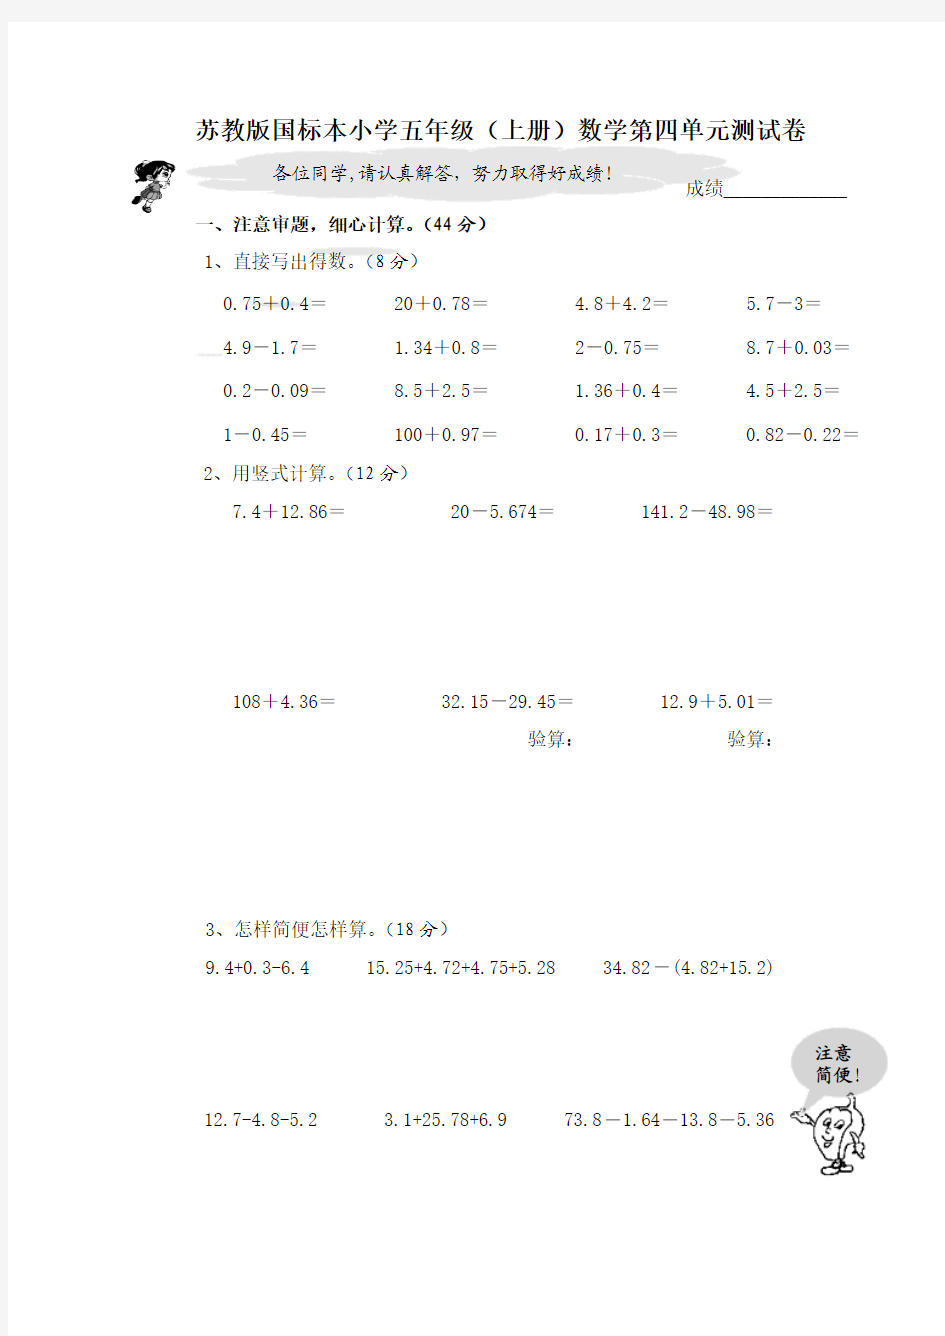 苏教版国标本小学五年级(上册)数学第四单元测试卷